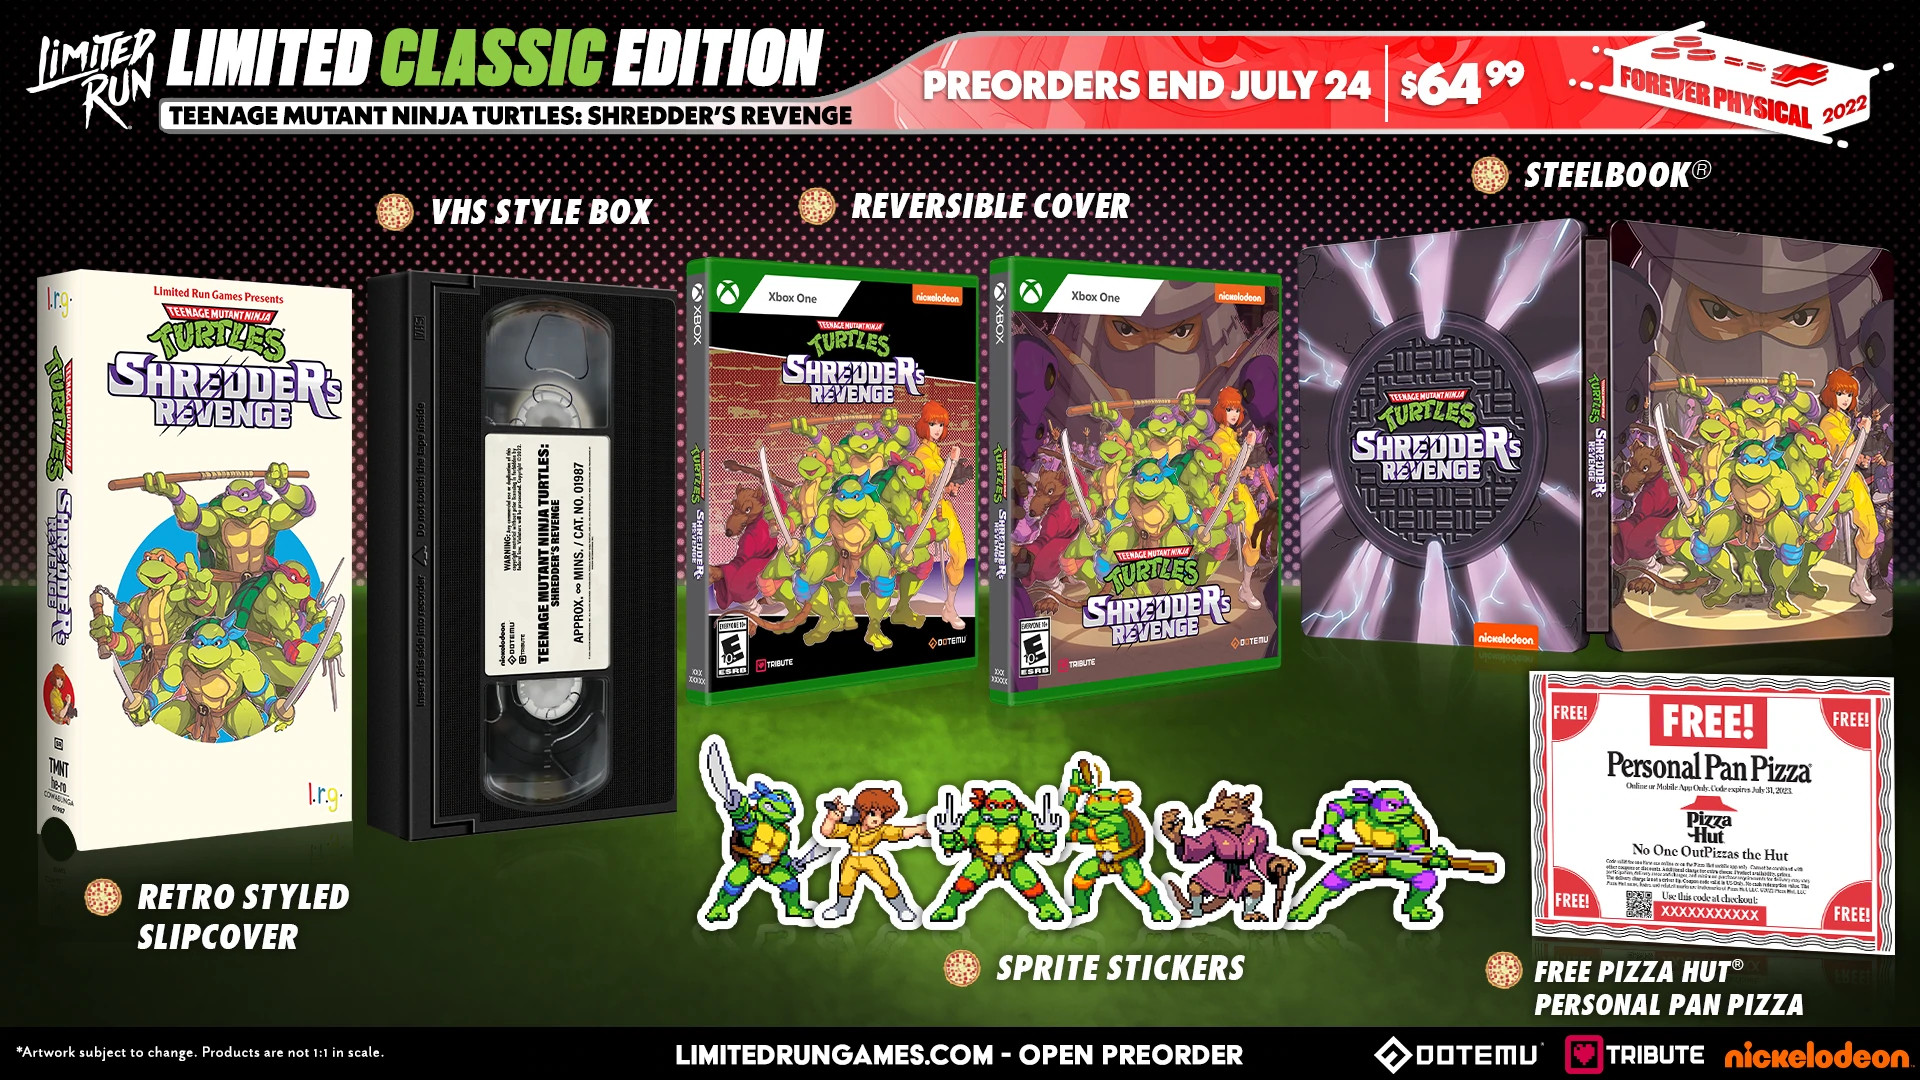 TMNT Shredder's Revenge Limited Classic Edition